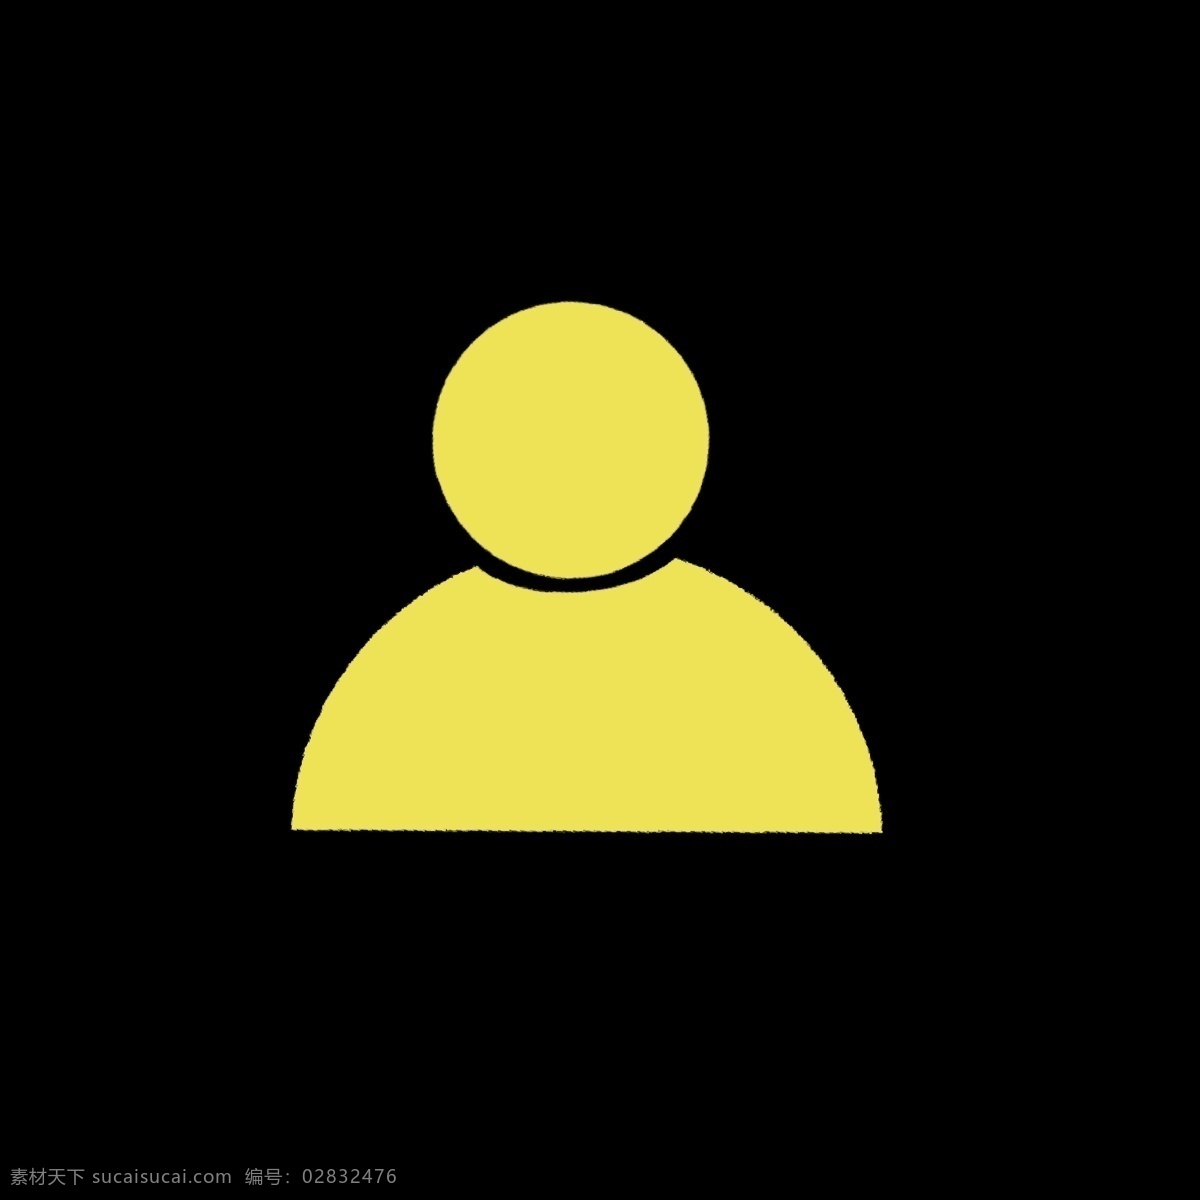 柠檬 黄色 人物 图标 柠檬黄 暖色 几何图形 彩色 白色 视频图标 卡通 ppt可用 简单 简约 简洁